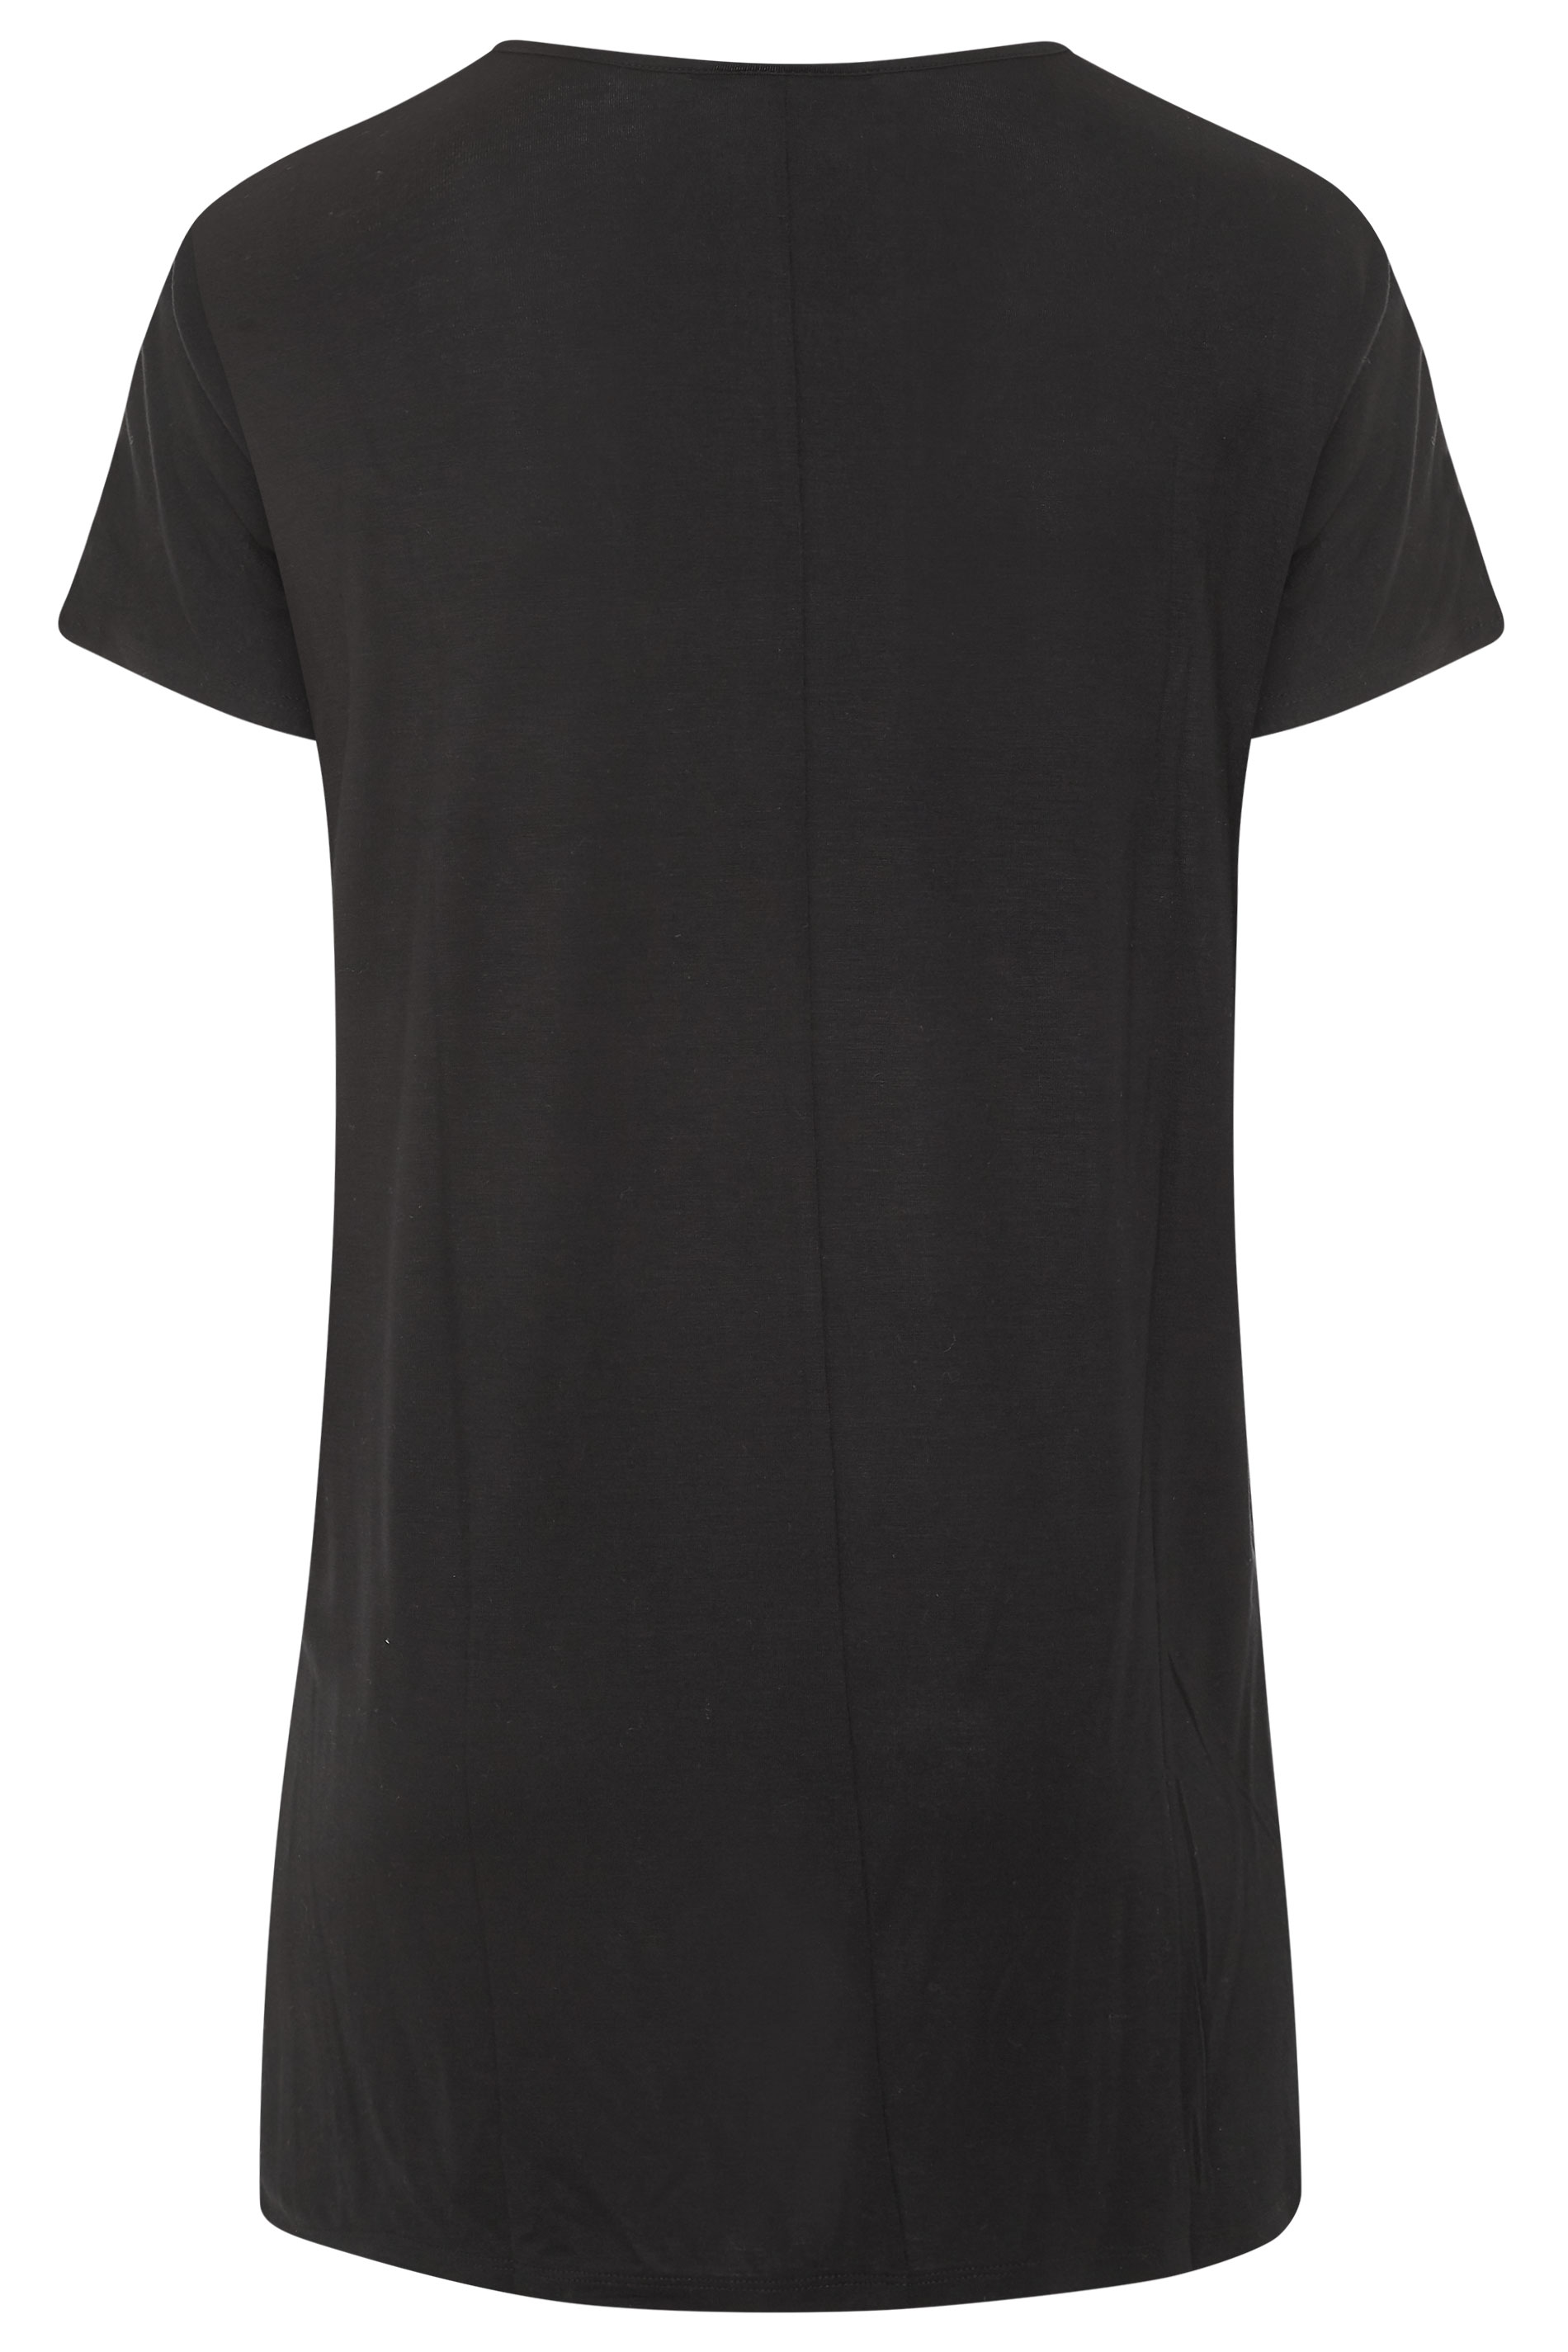 Grande taille  Tops Grande taille  T-Shirts Basiques & Débardeurs | Top Noir en Jersey Ourlet Plongeant - WP12301